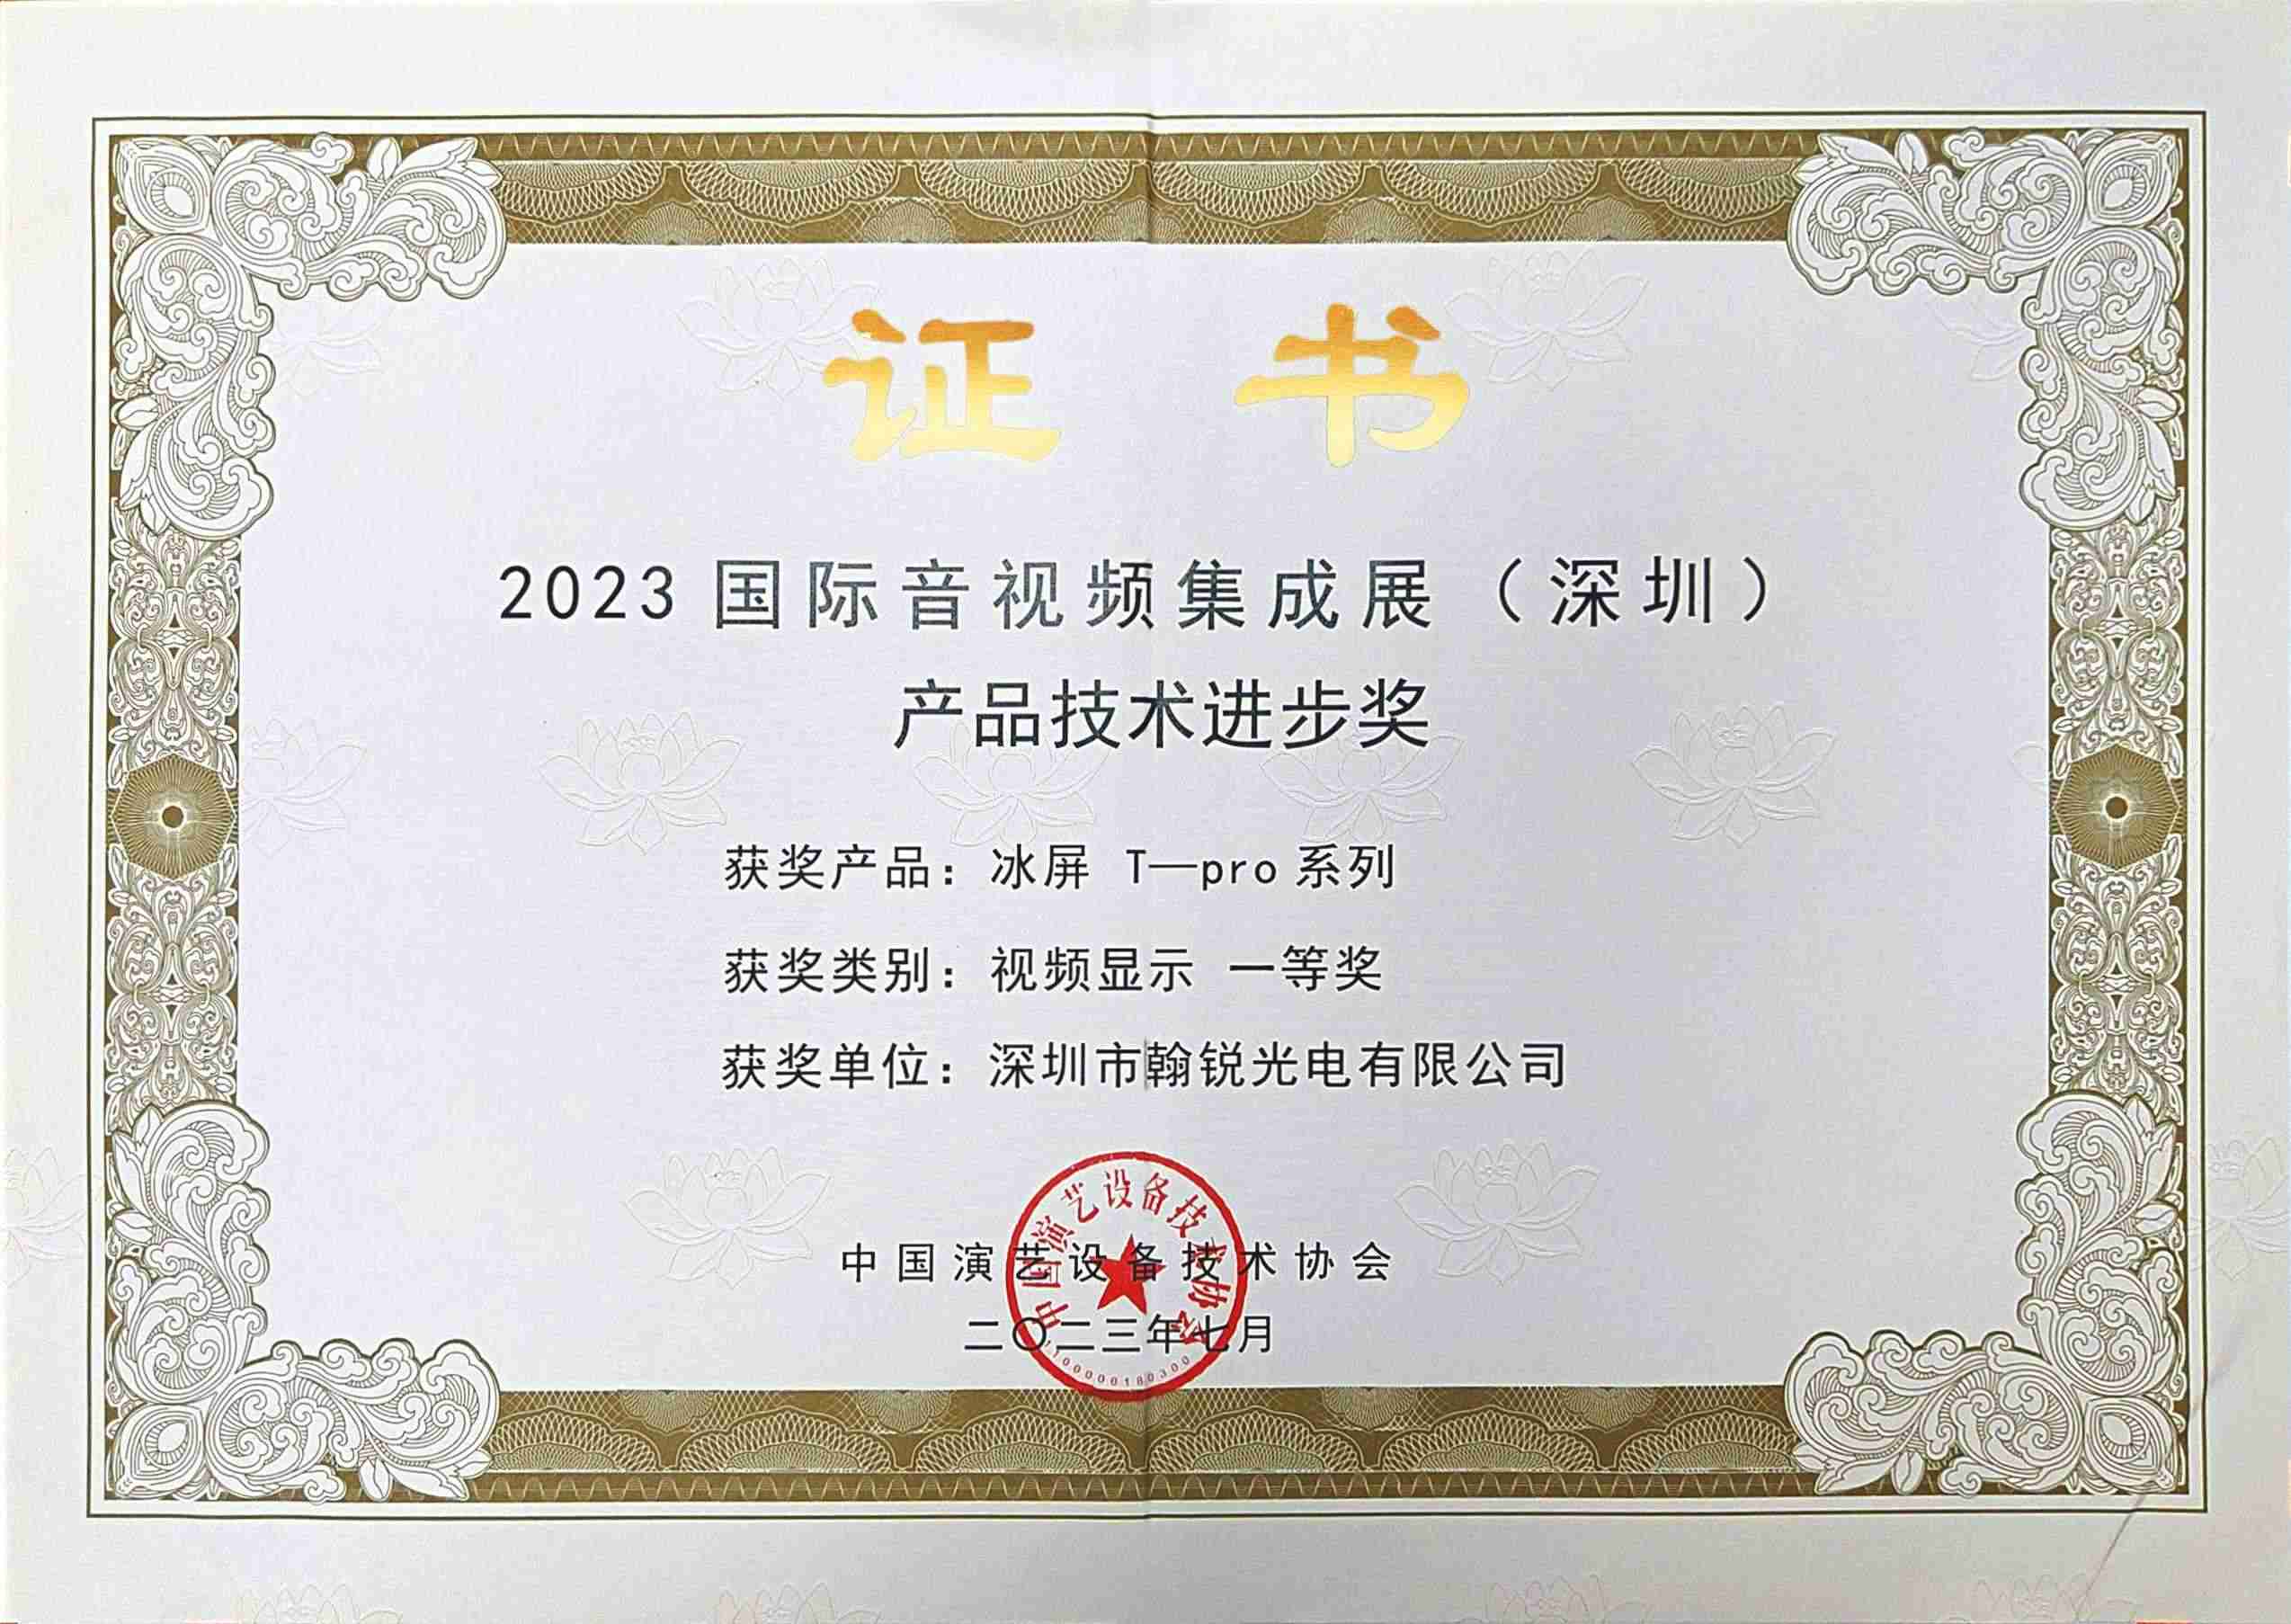 Поздравляем! Showtechled «LED Ice Screen» выиграл первый приз, выданный Китайской ассоциацией технологий оборудования для исполнительских искусств